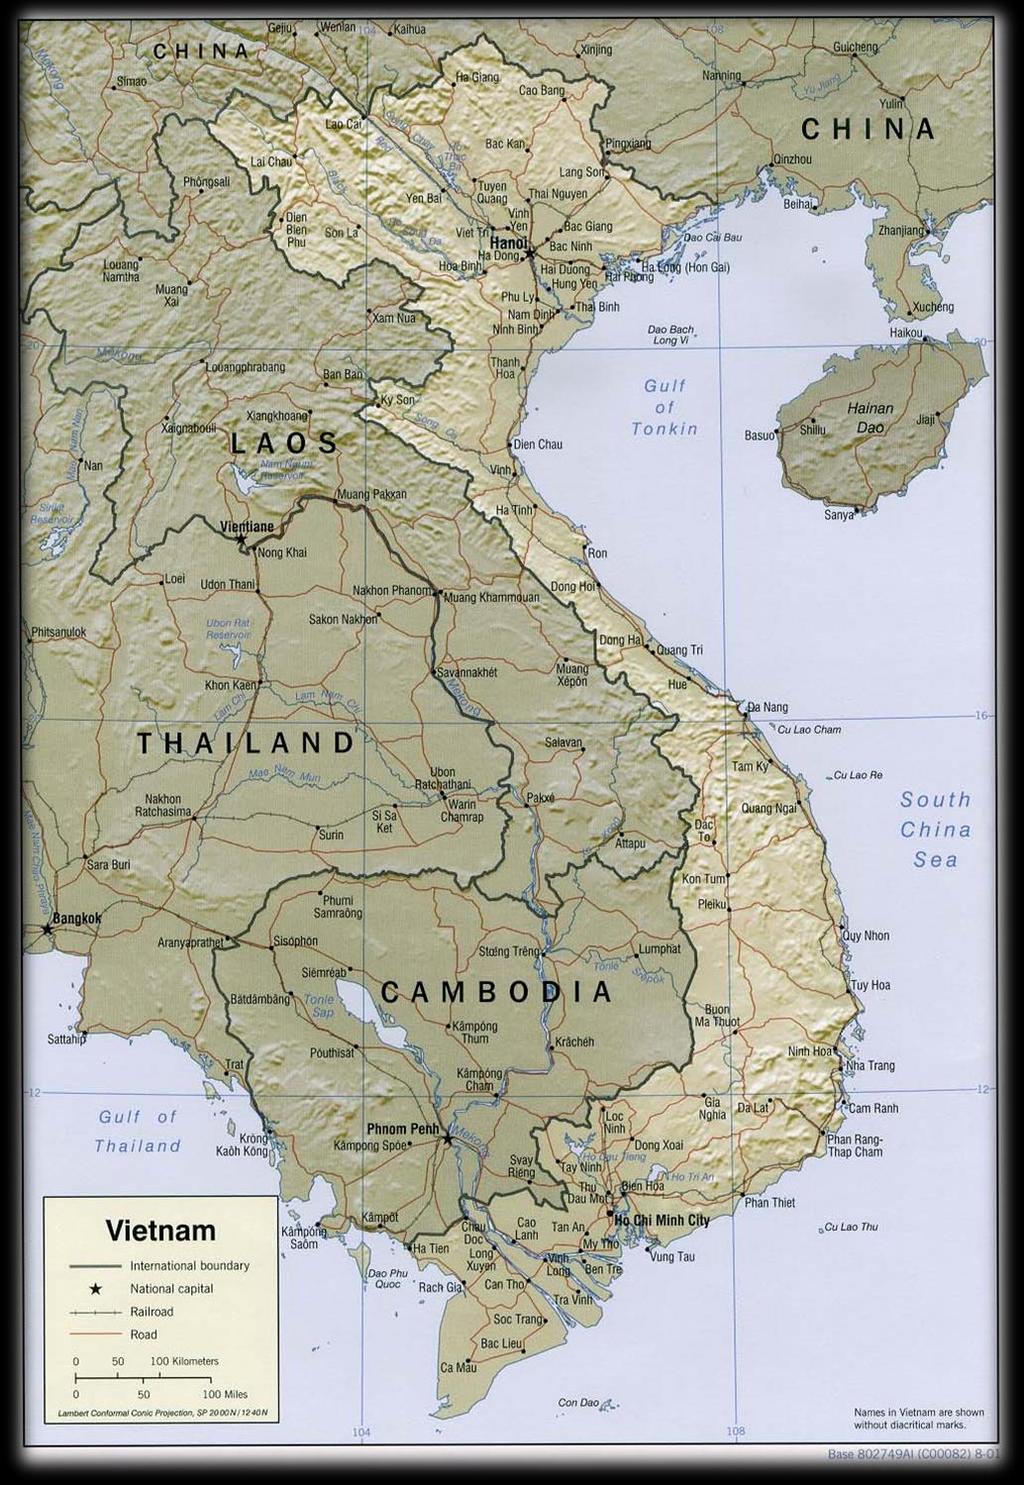 Vietnam in 1954 17